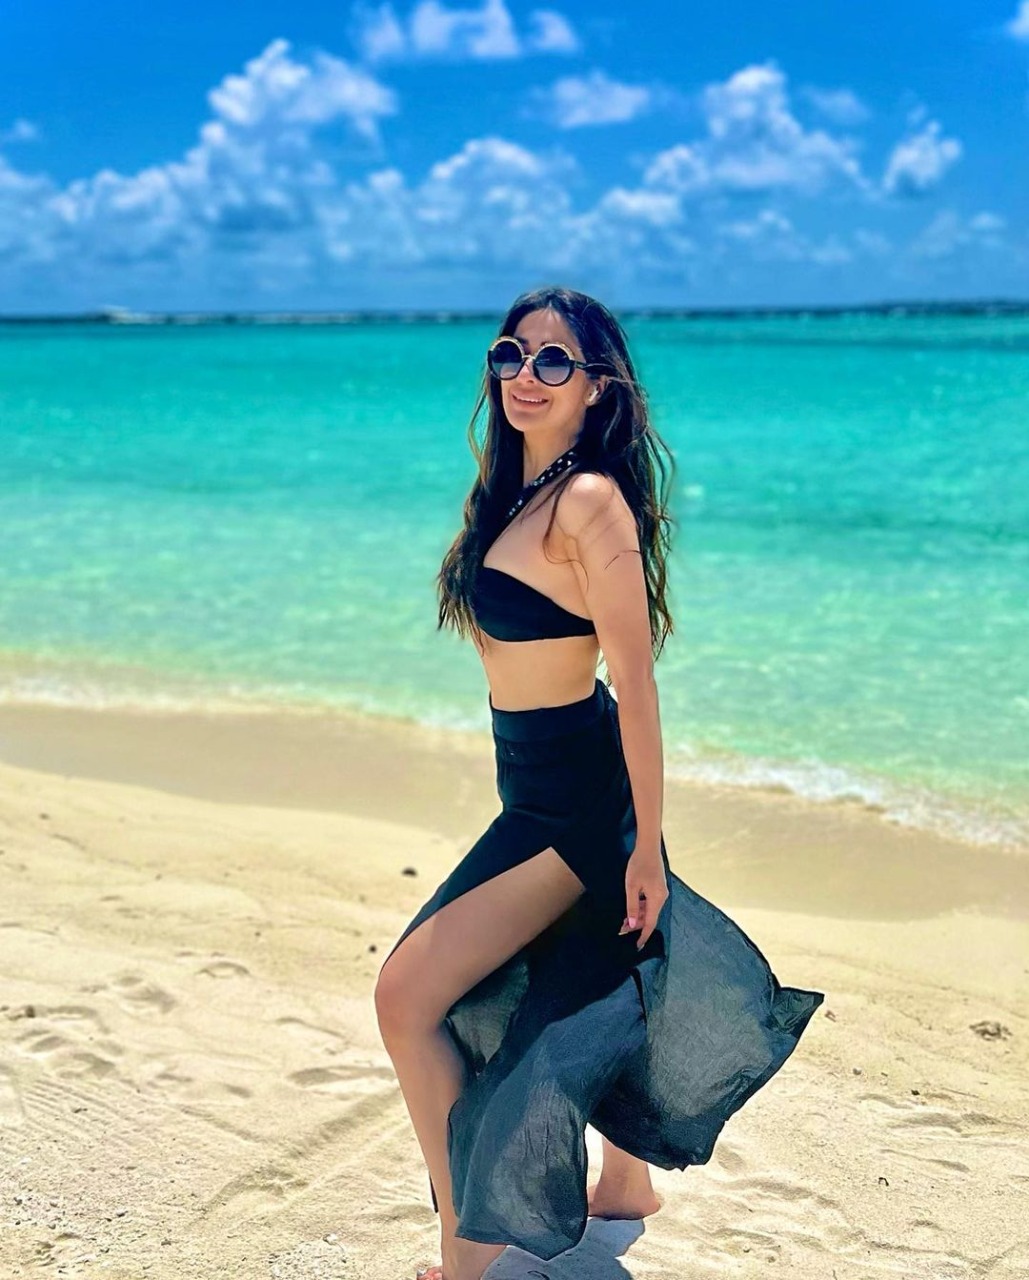 Actress Raai Laxmi Maldives Beach Vacation Images Videos goes viral